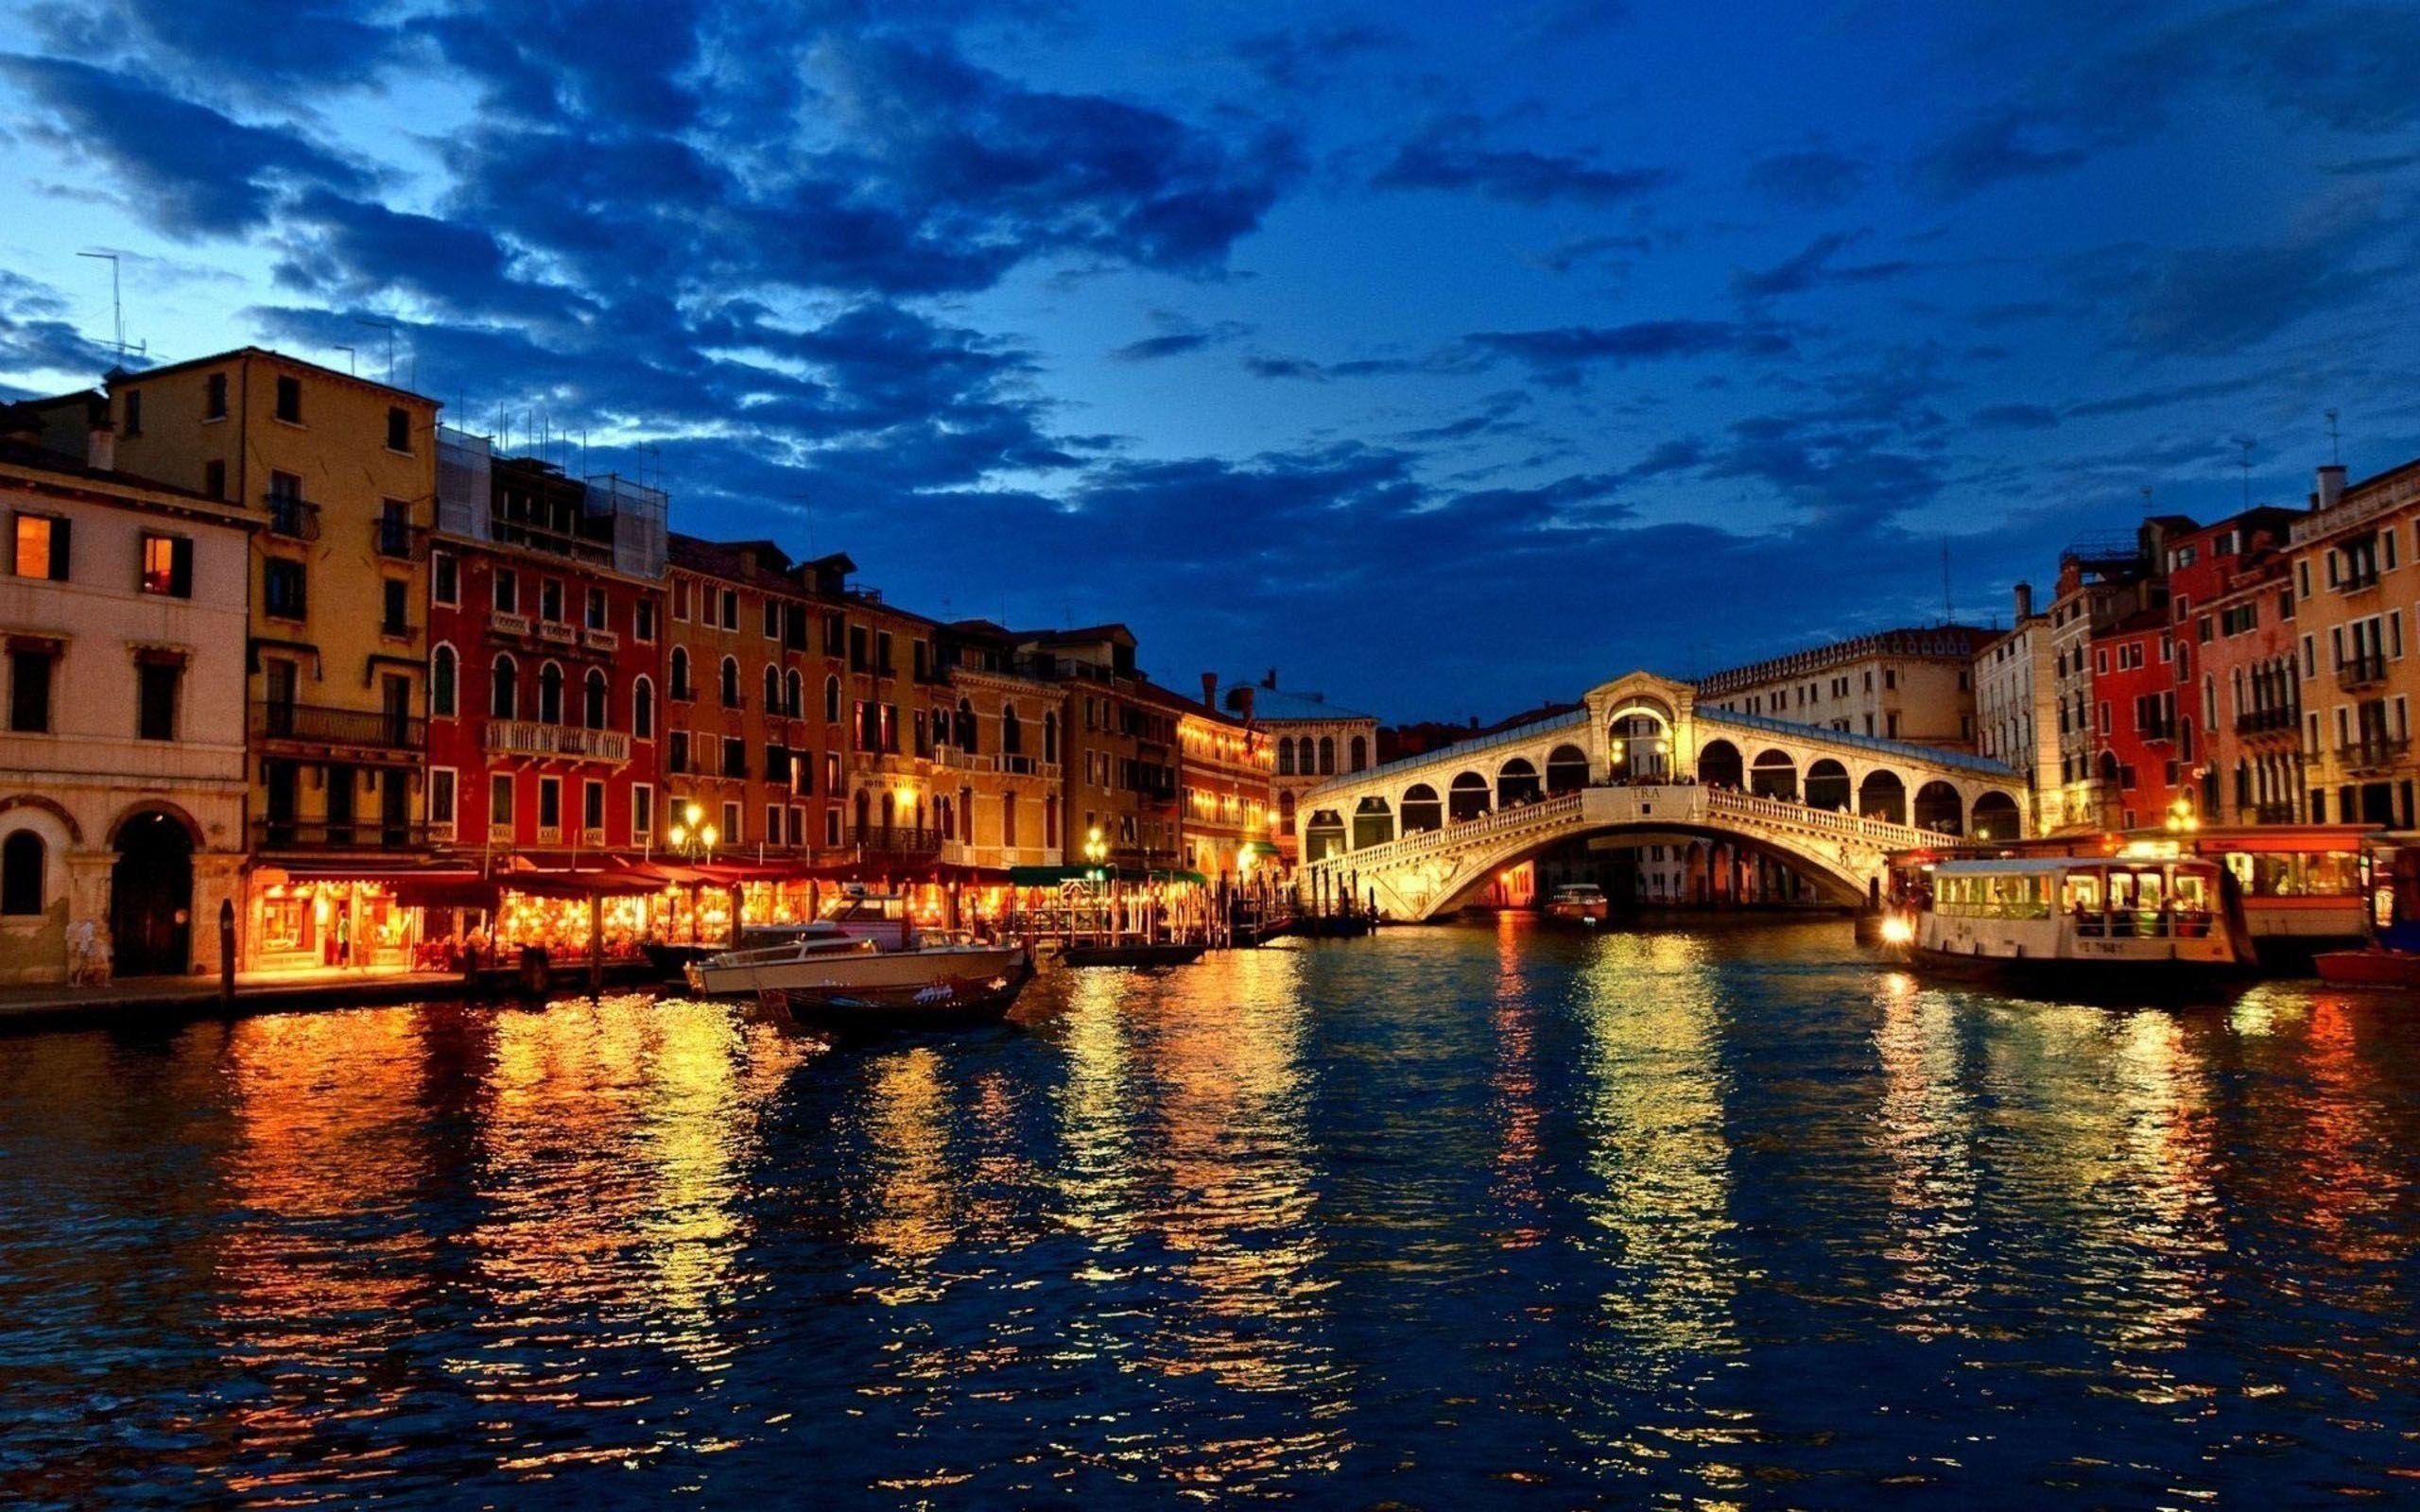 Venice Italy Desktop Wallpaper